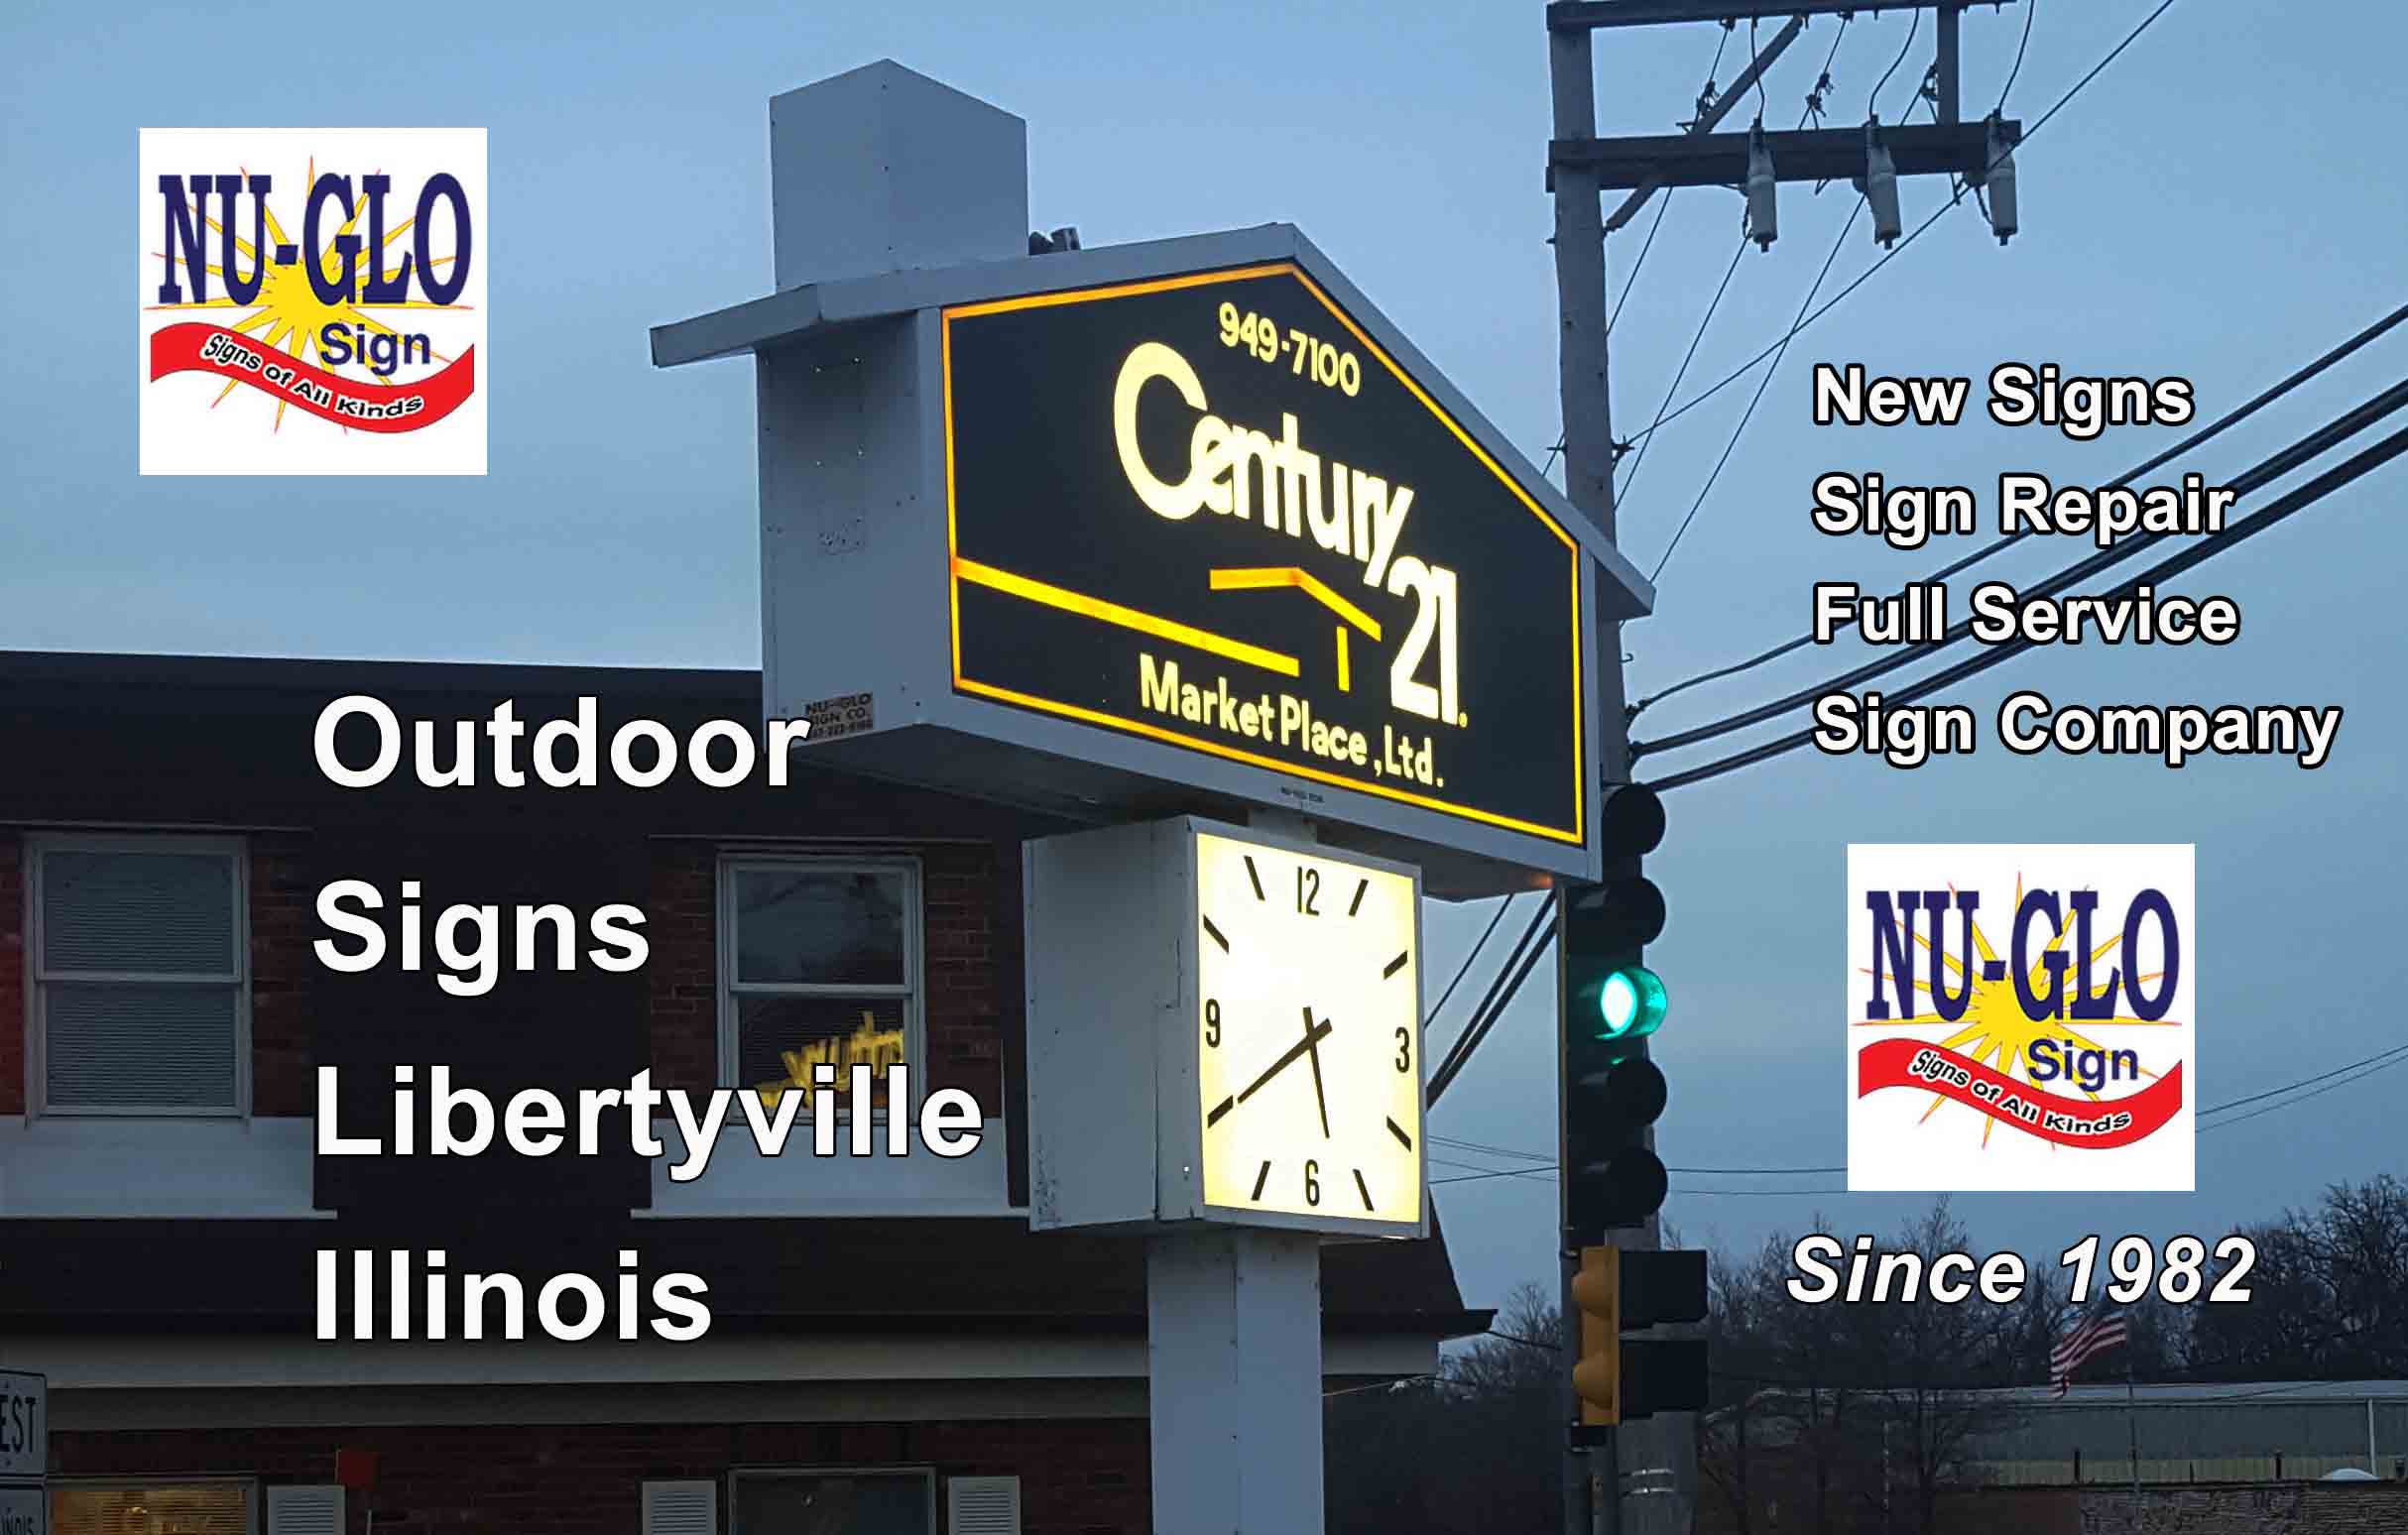 Outdoor Signs - Libertyville Illinois